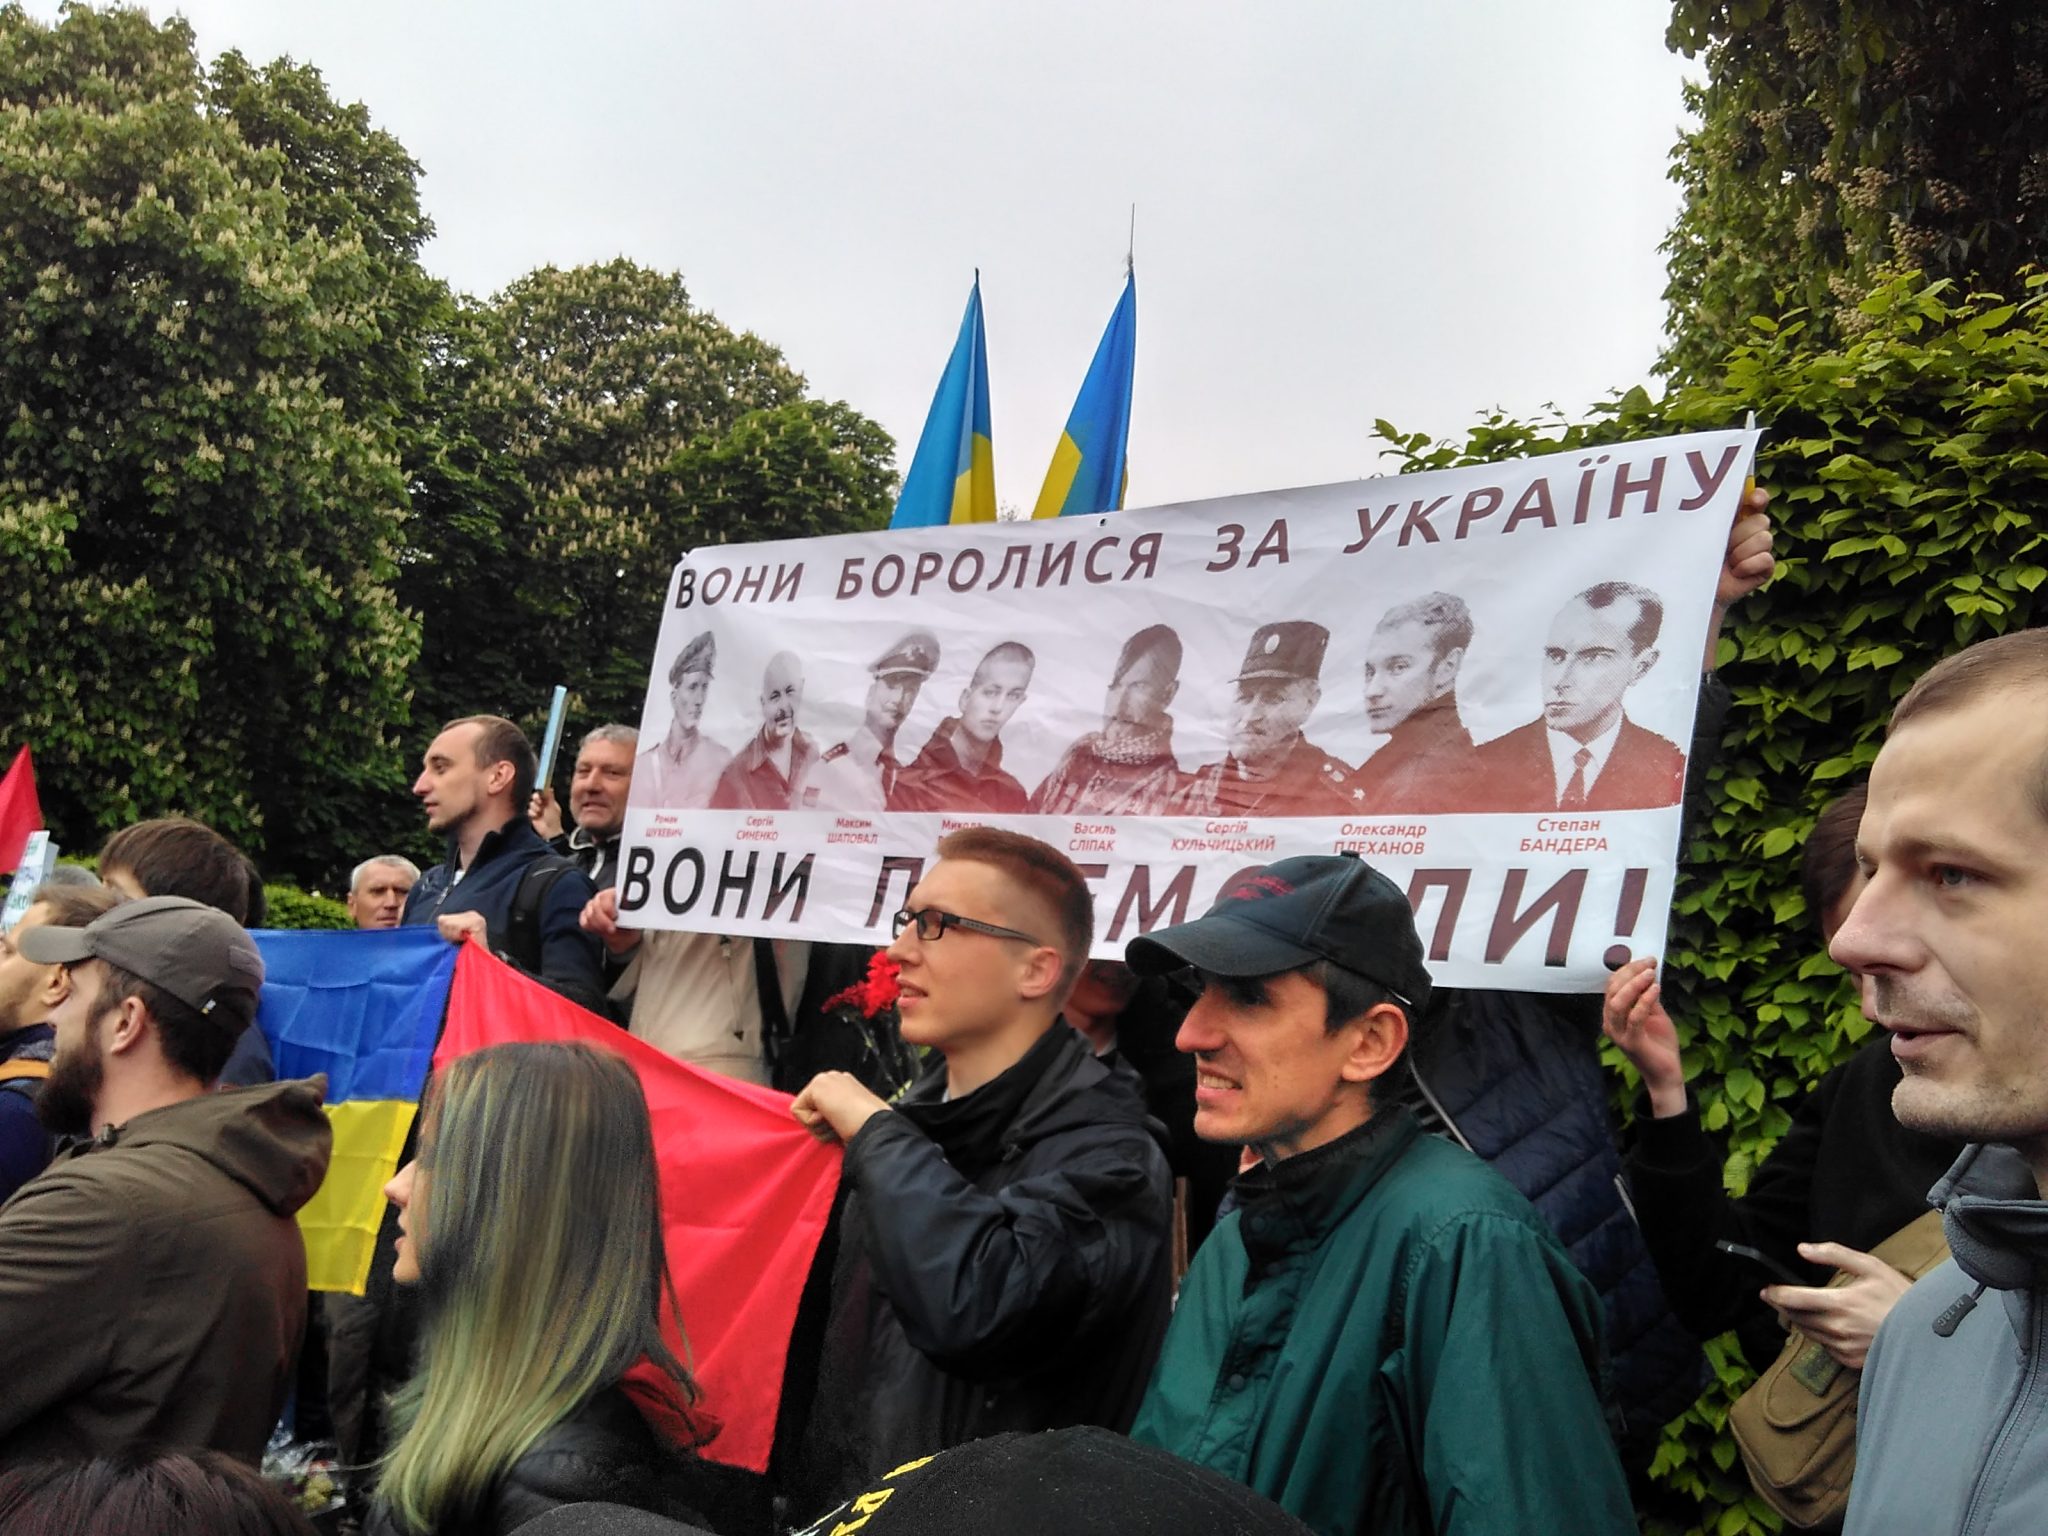 Молодые люди с плакатом «Они боролись за Украину! Они победили!». Фото Дмитрия Дурнева/Spektr.Press